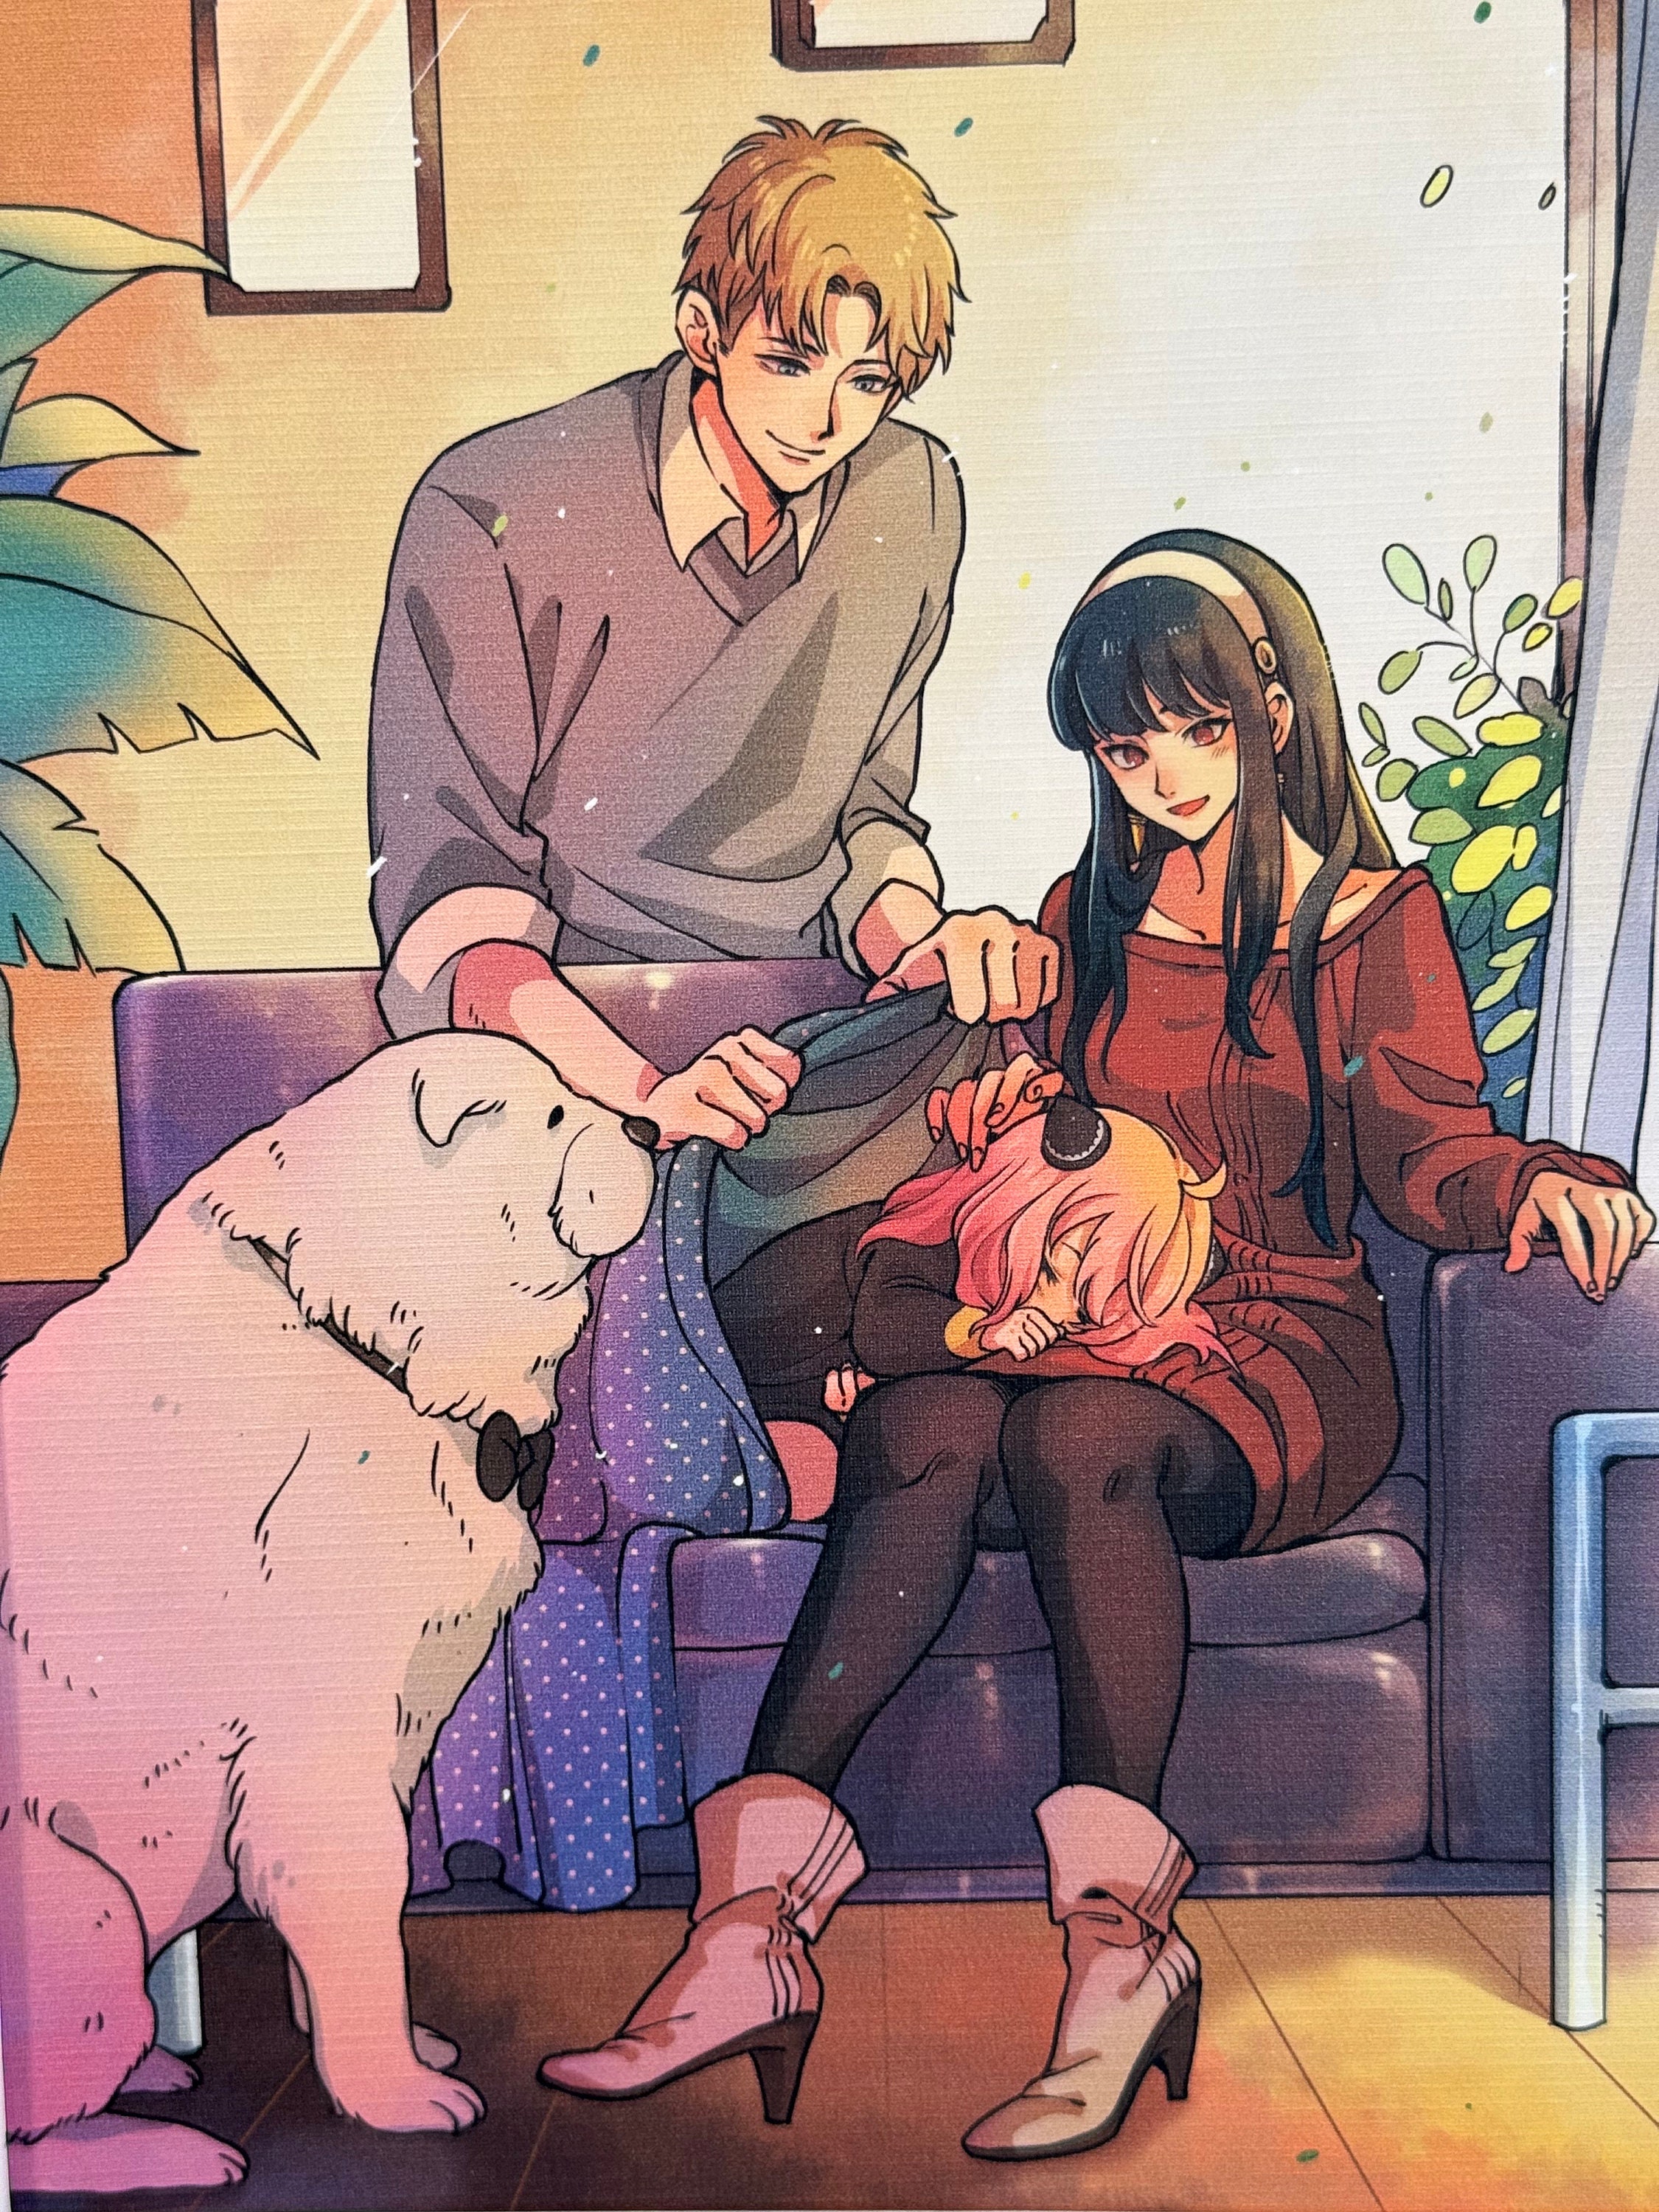 Poster Anime Spy x Family A2 Tamanho 60x42 cm Lo01